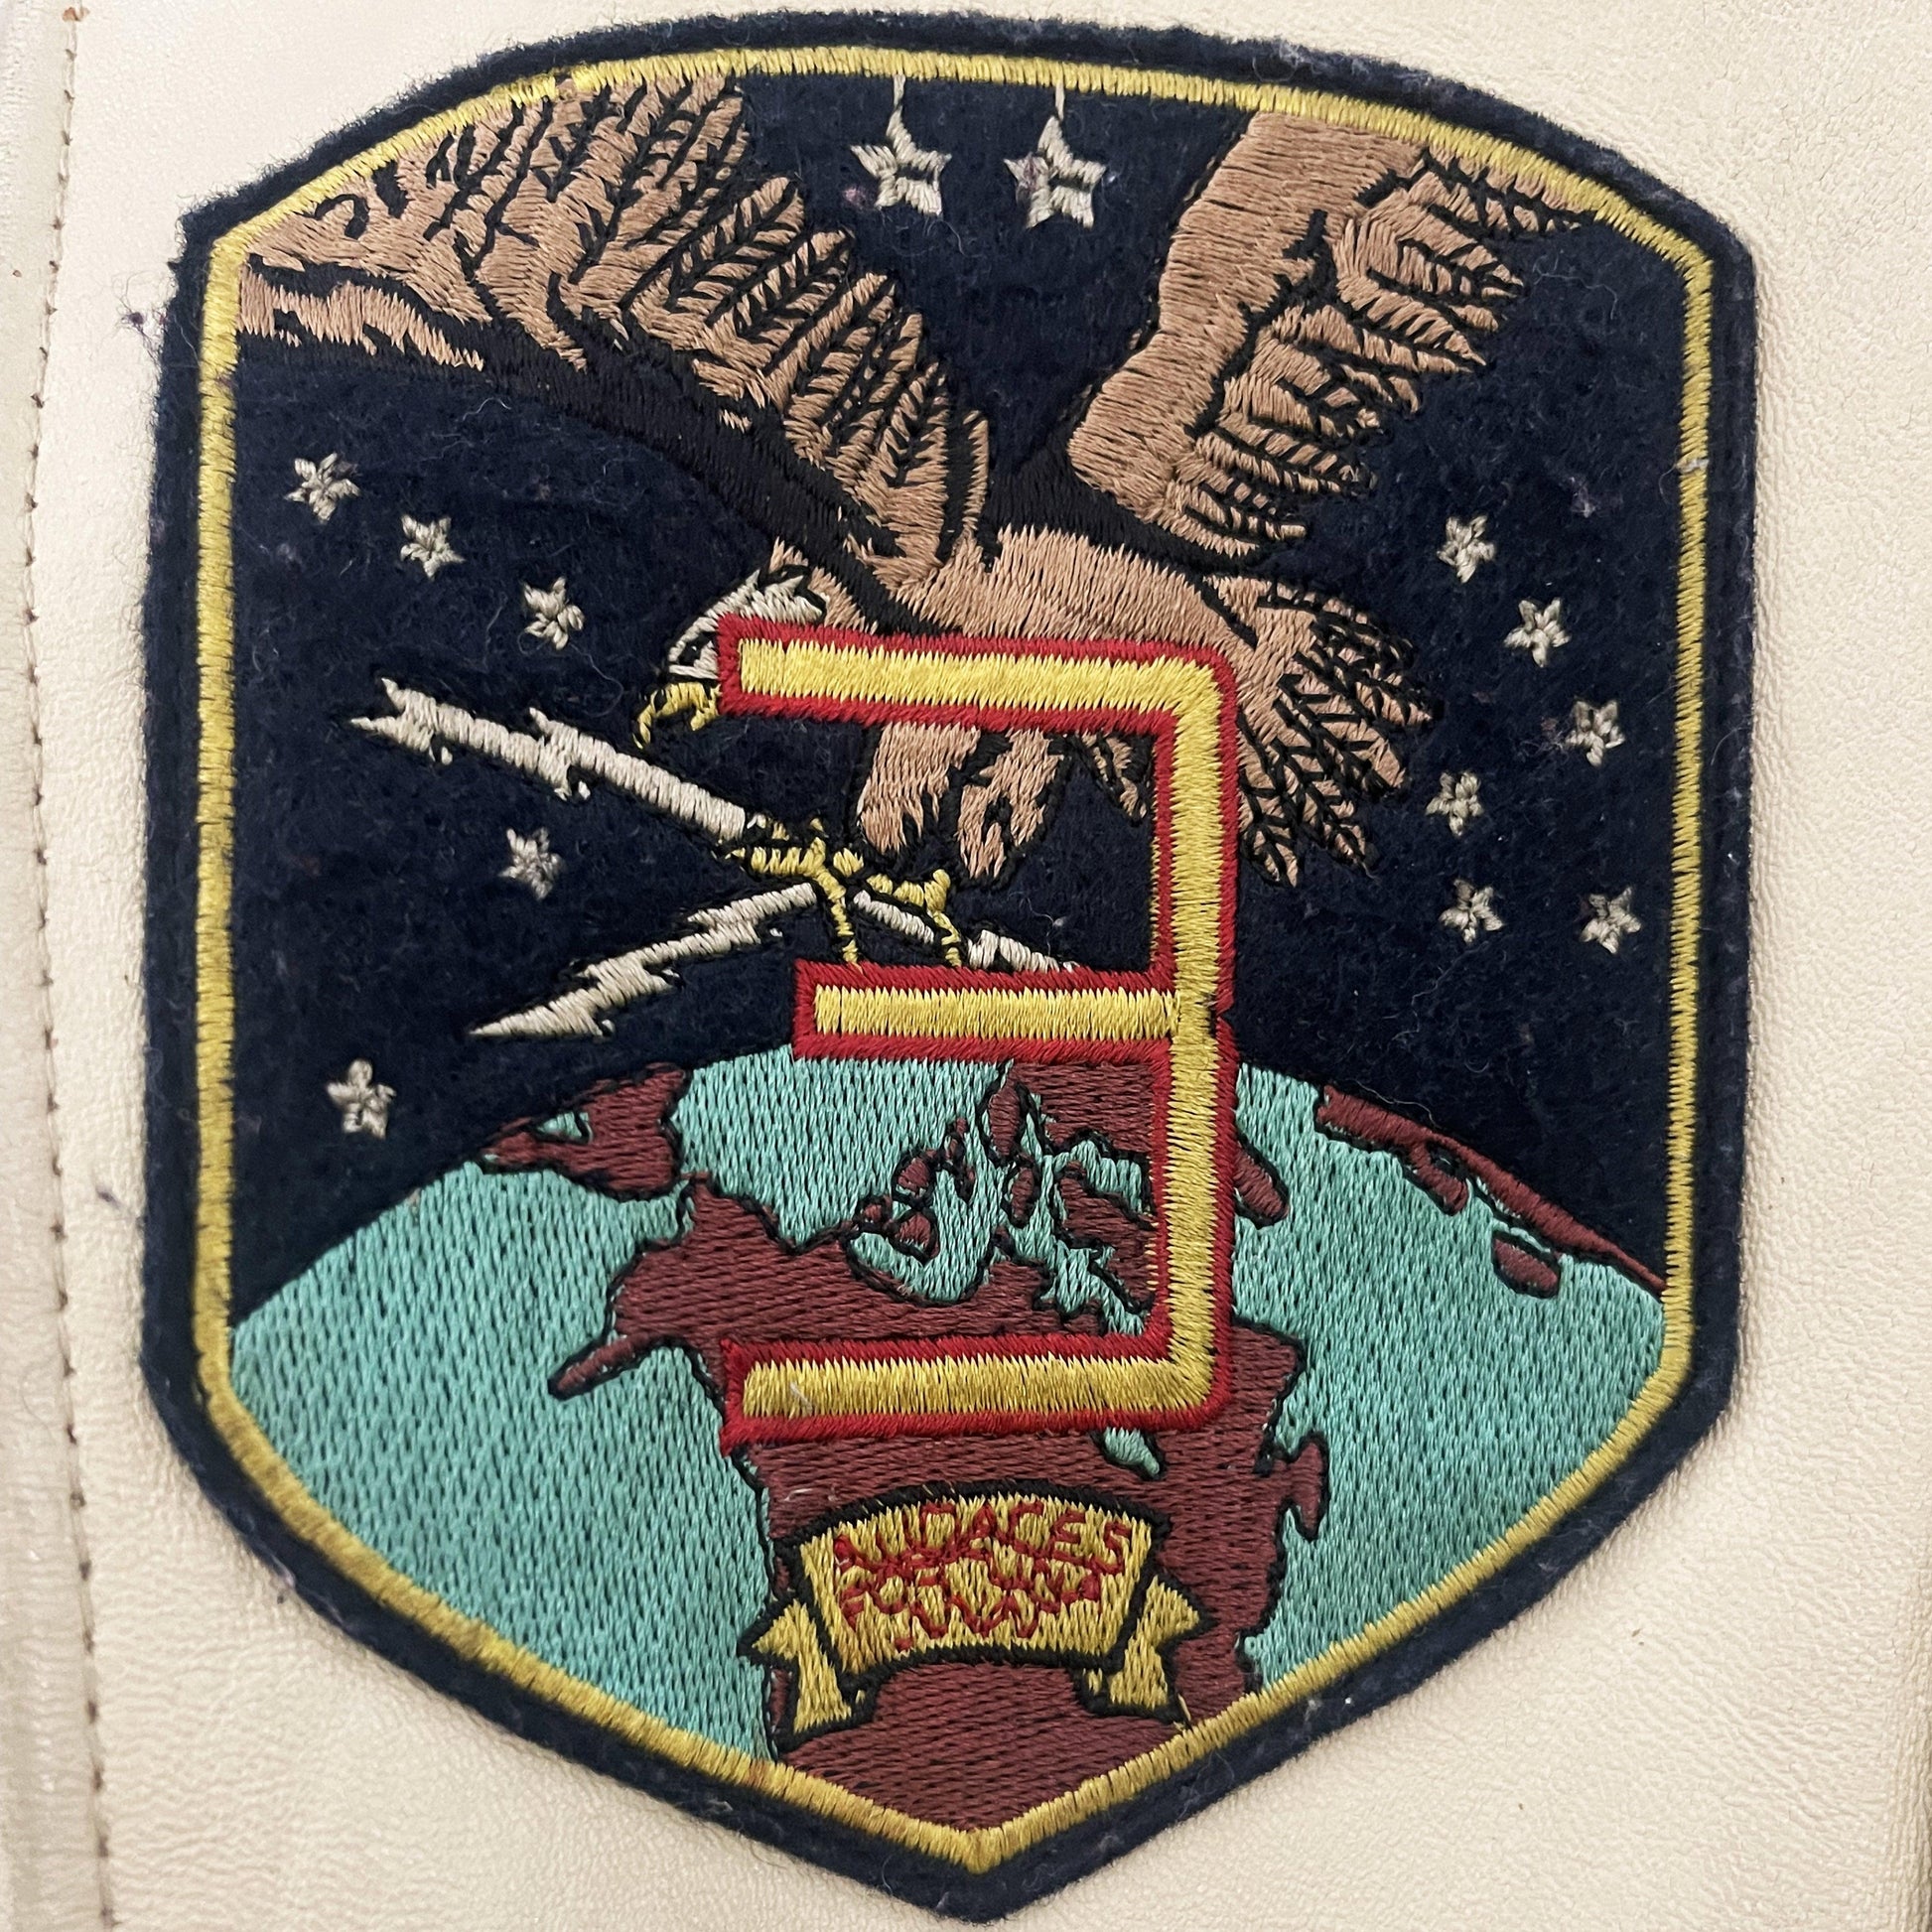 Avirex Top Gun G-1 Flight Jacket - Known Source